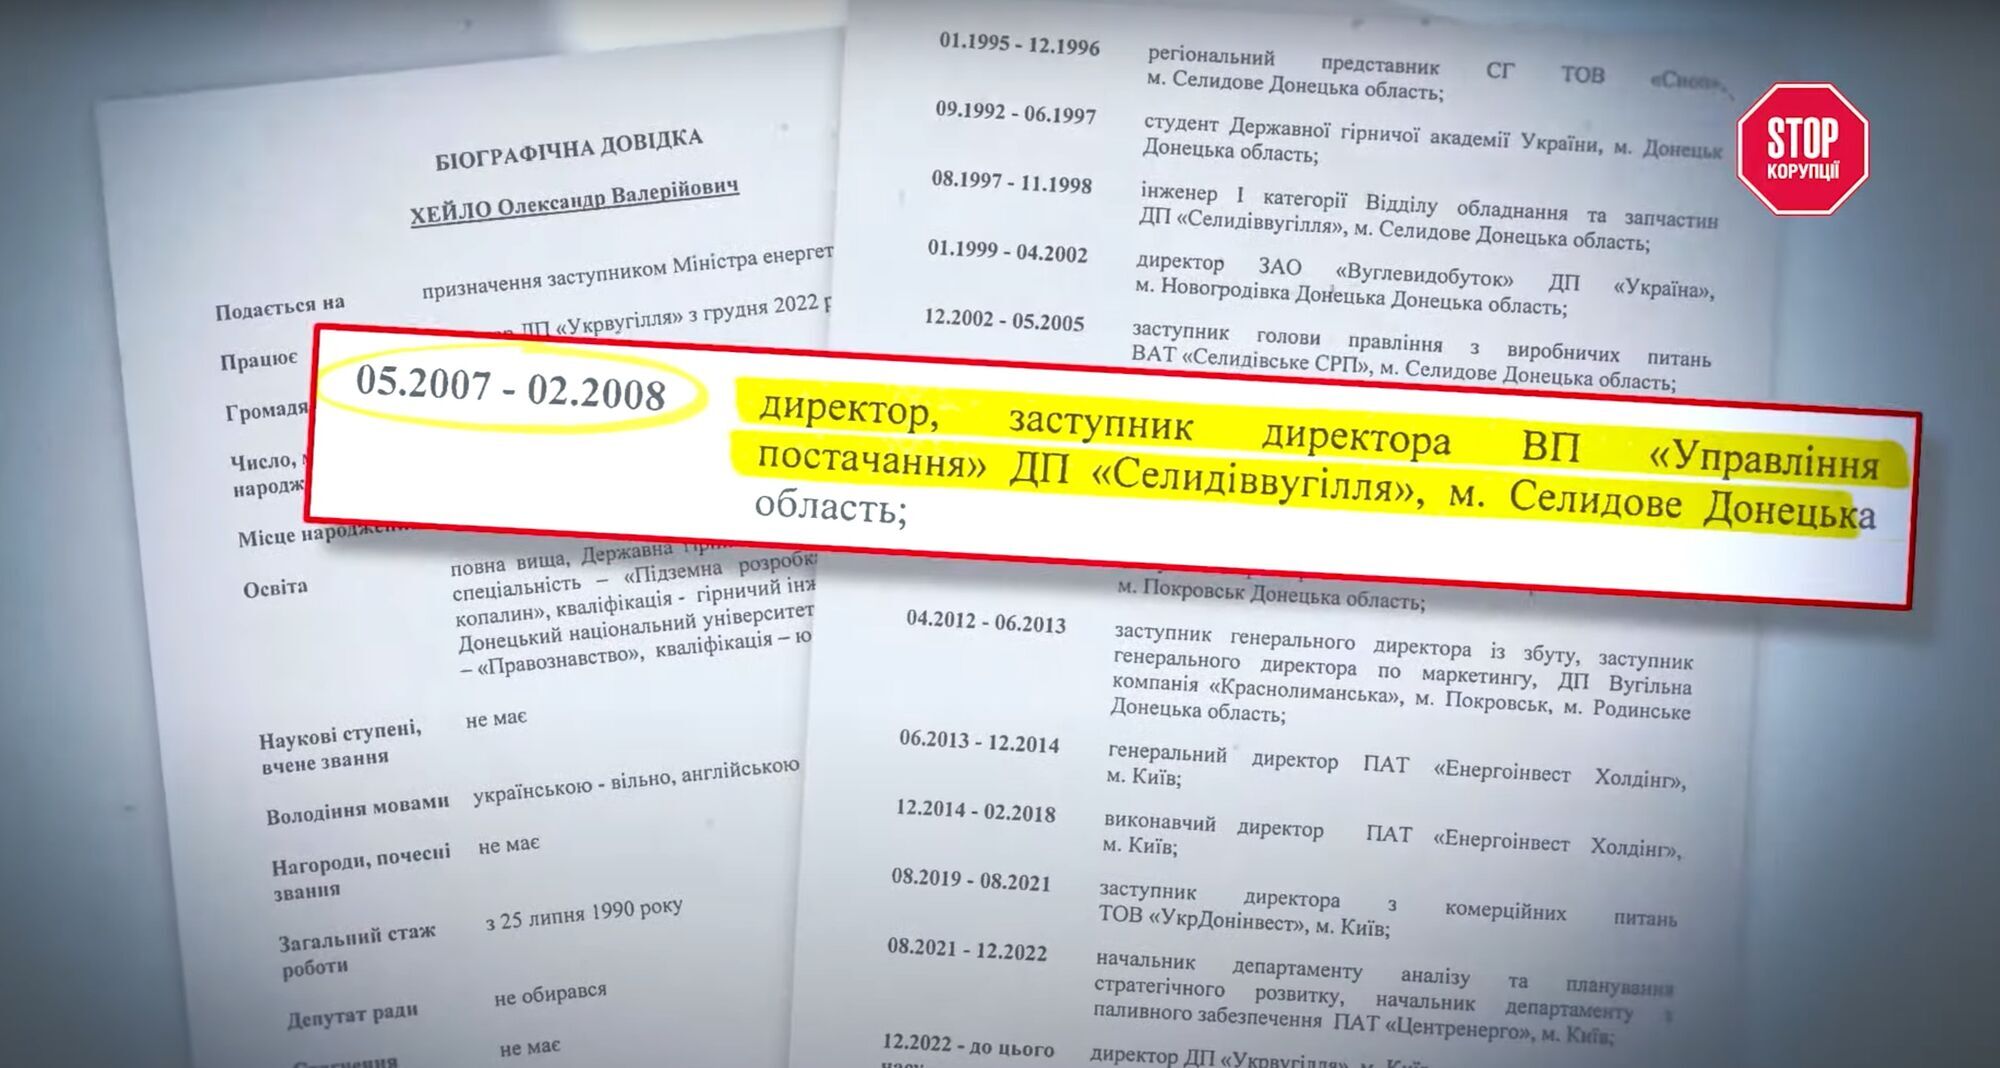 В непубличной трудовой биографии нового замминистра есть фирмы по орбите клана Януковичей